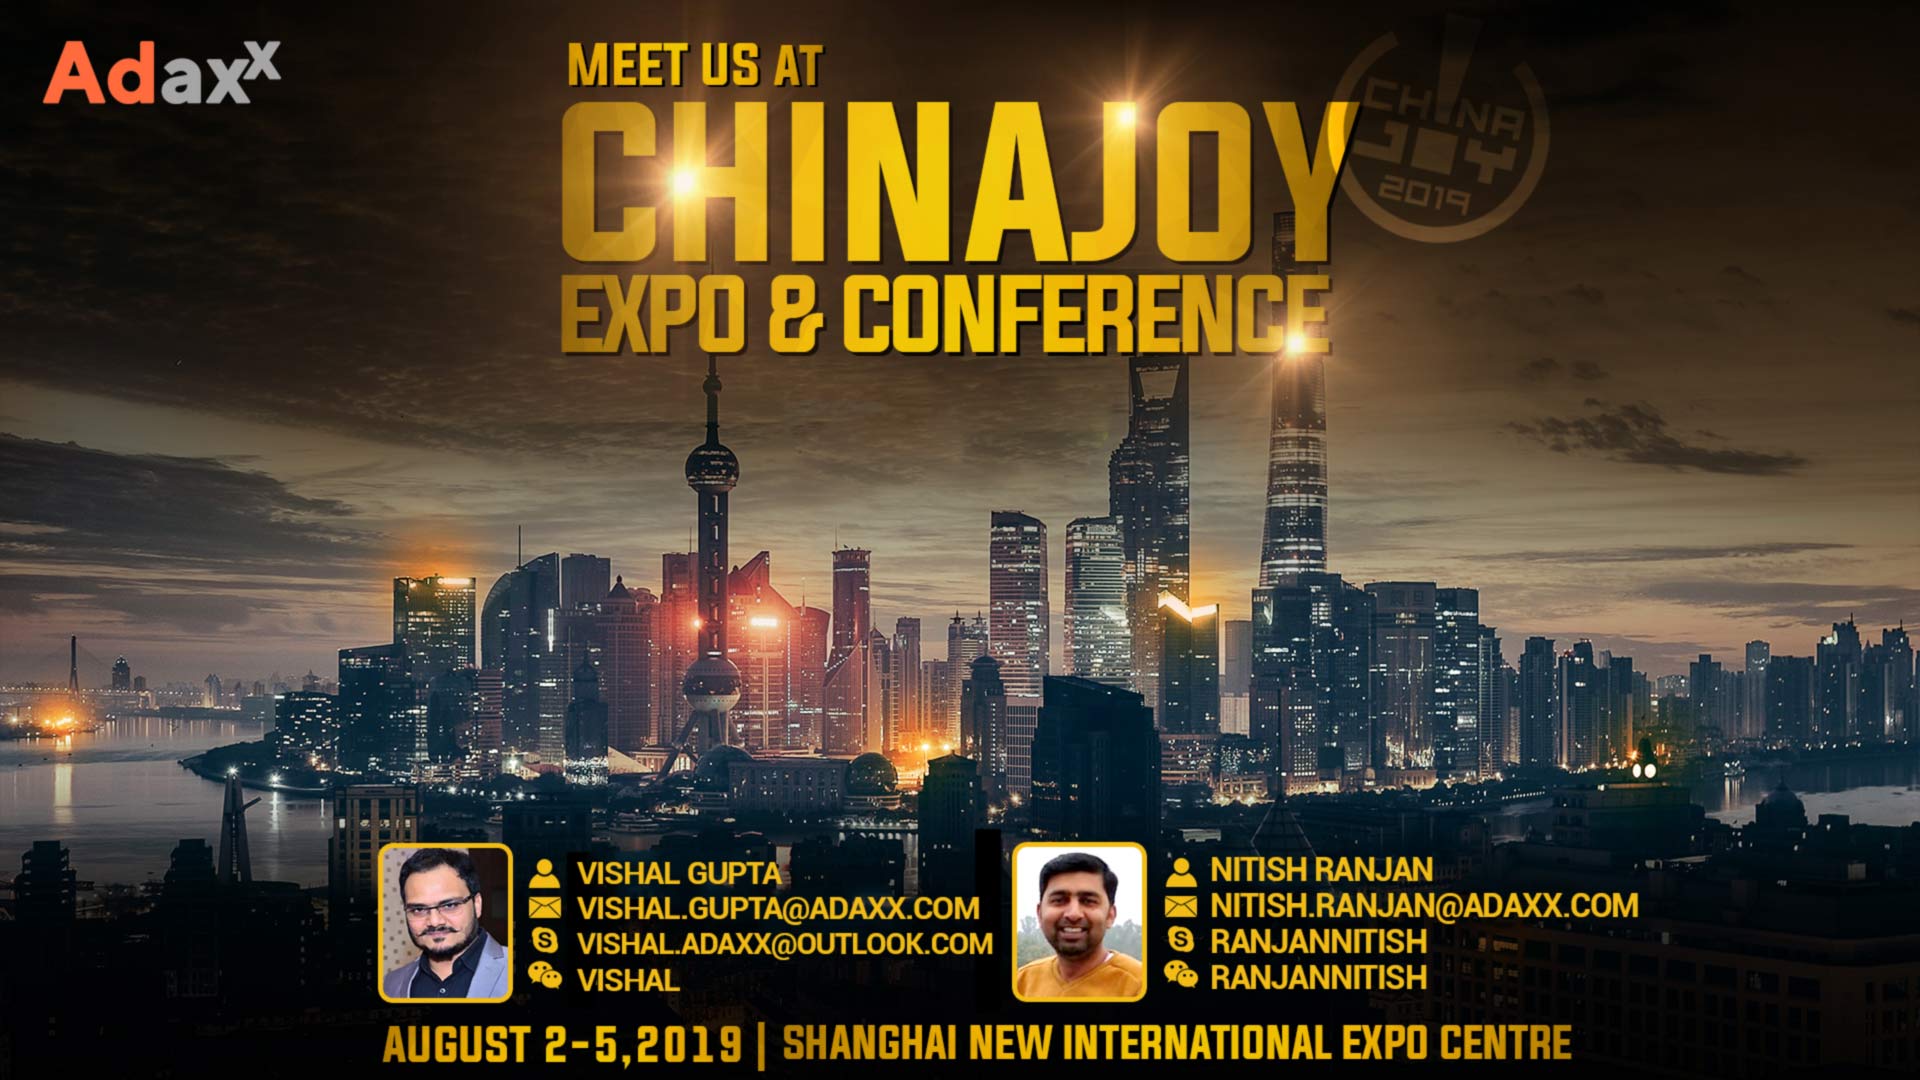 China Joy Expo & Conference